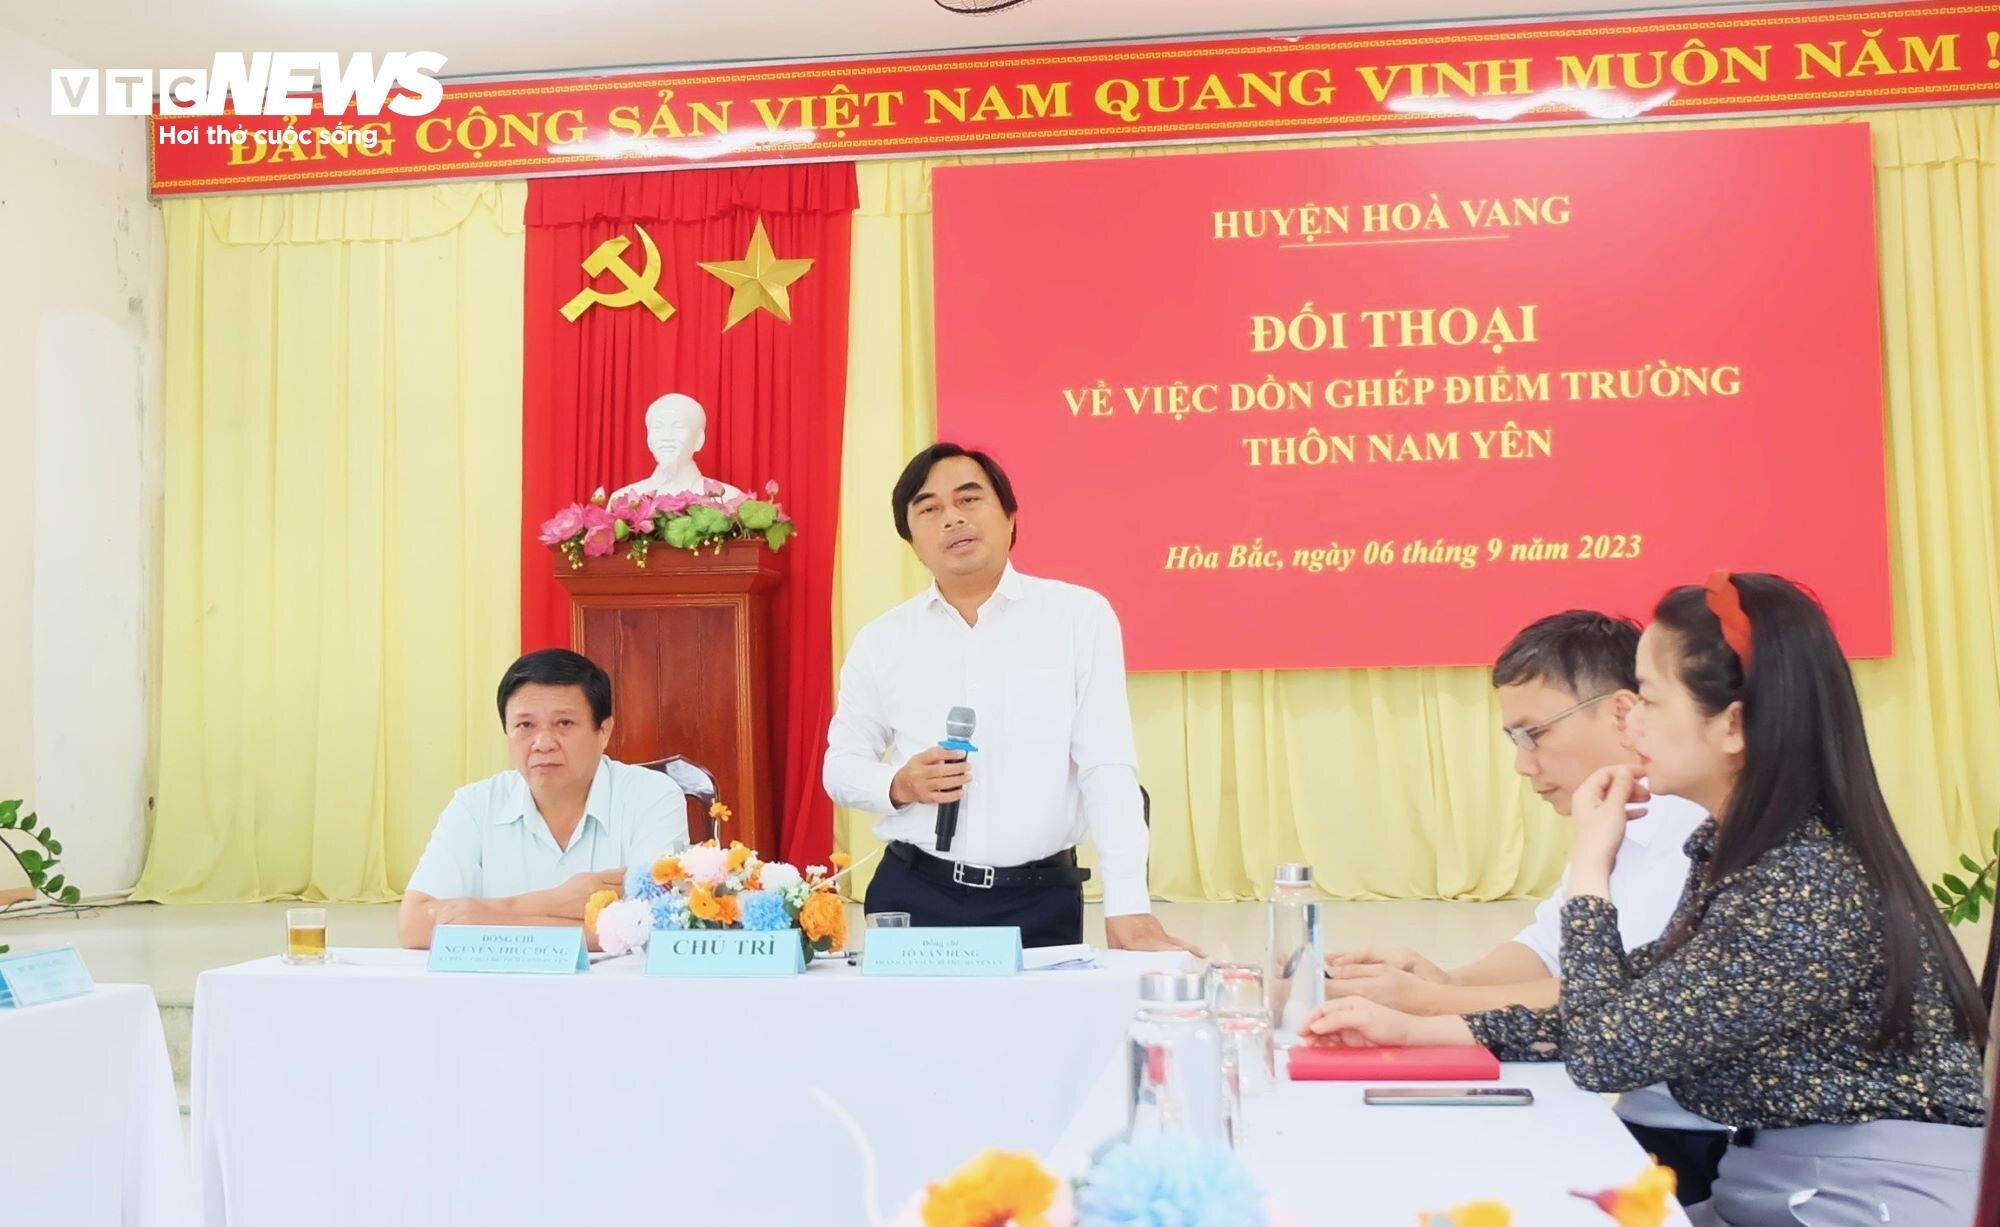 Ông Tô Văn Hùng, Bí thư huyện Hòa Vang chia sẻ tại buổi đối thoại.